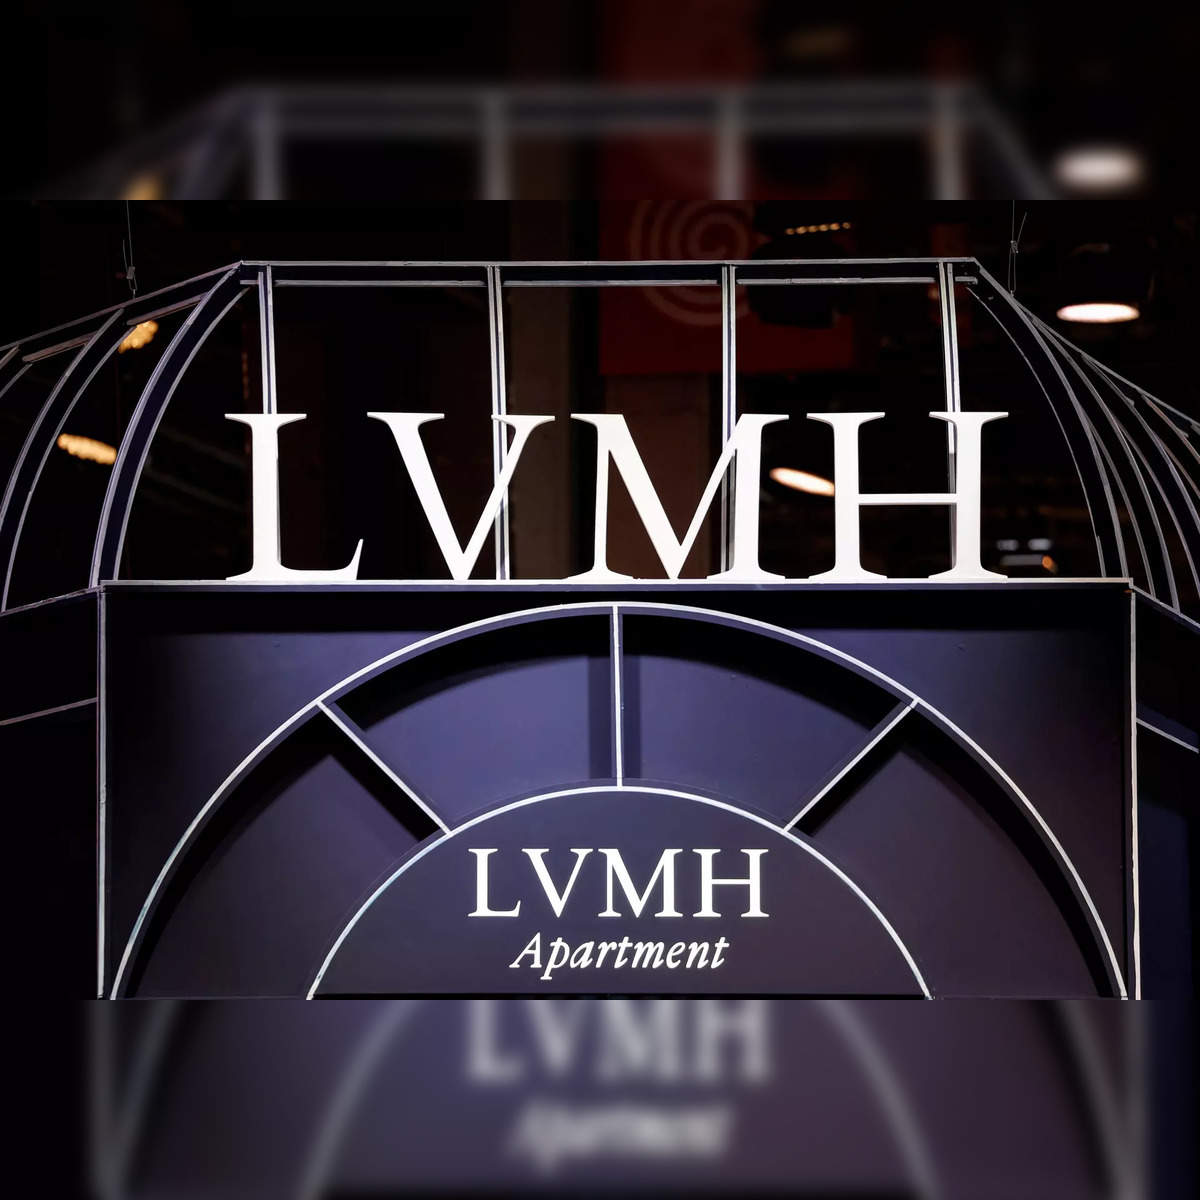 LVMH breaks into world top 10 as market cap nears $500 billion